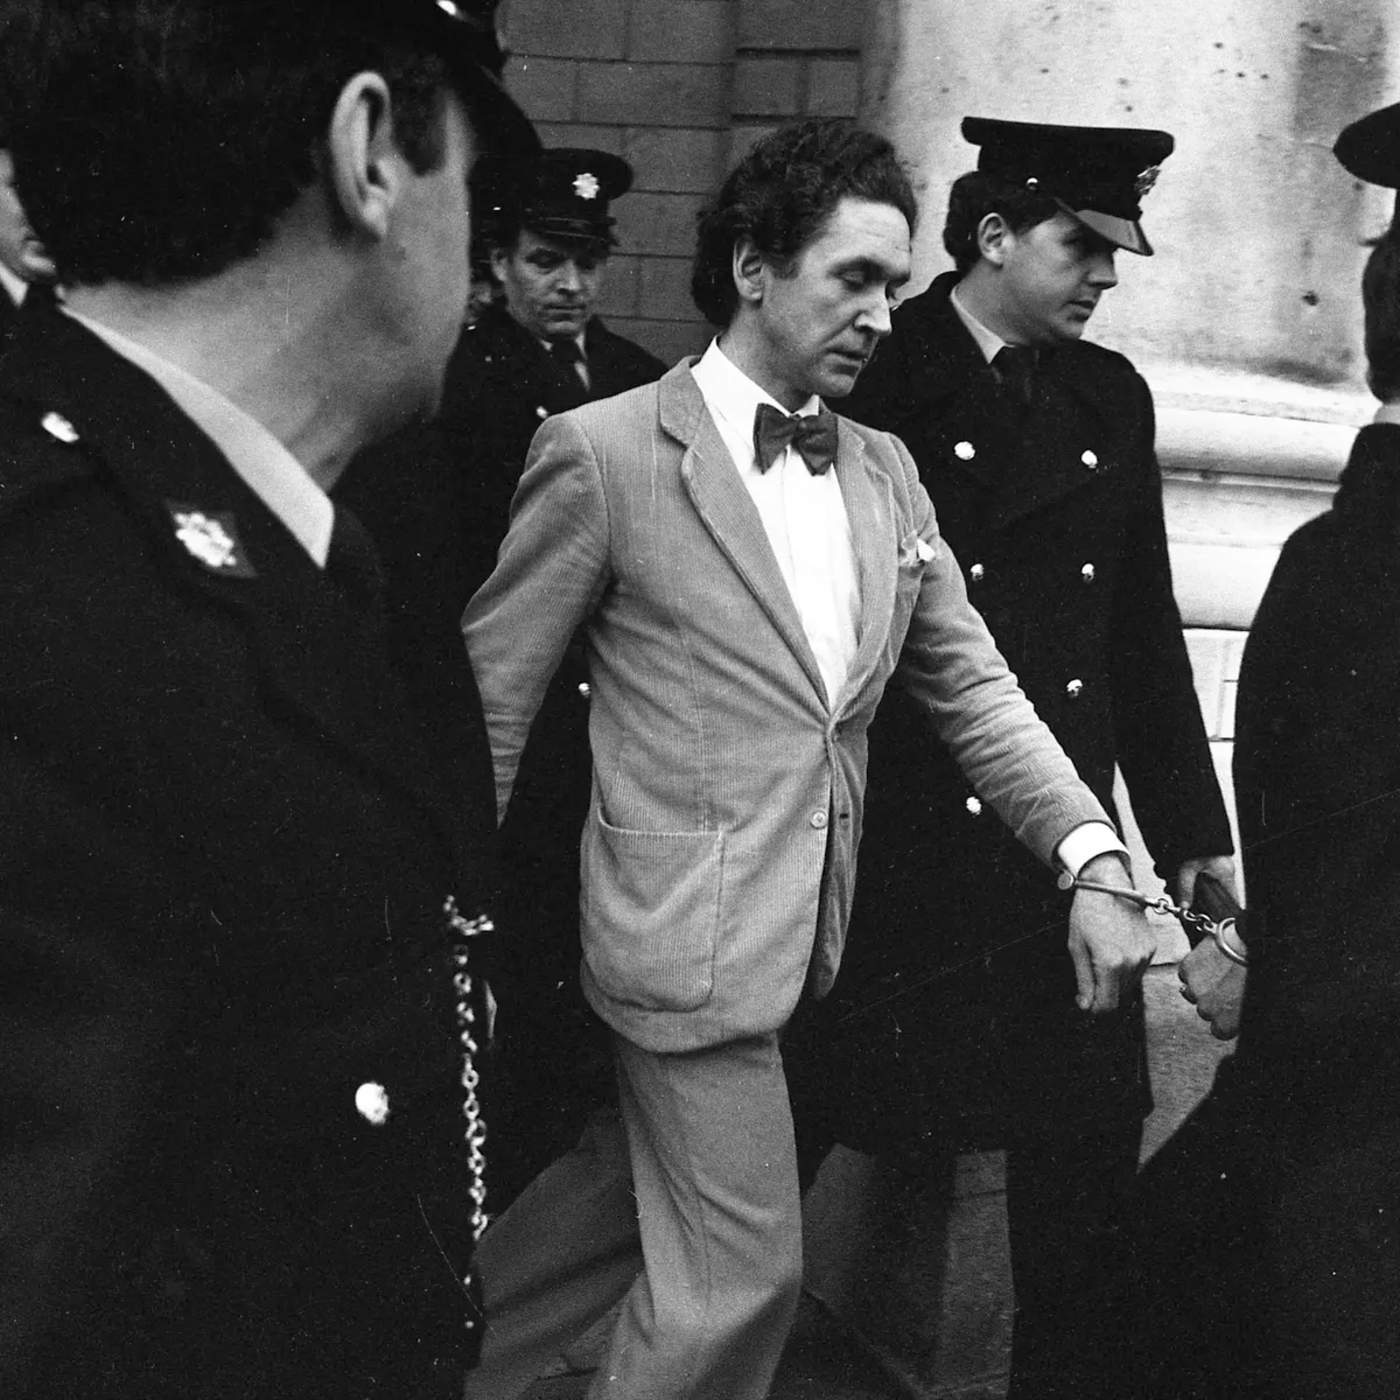 Grotesco, inverosímil, demencial e insólito: Malcolm Macarthur, el asesino que conmocionó Irlanda